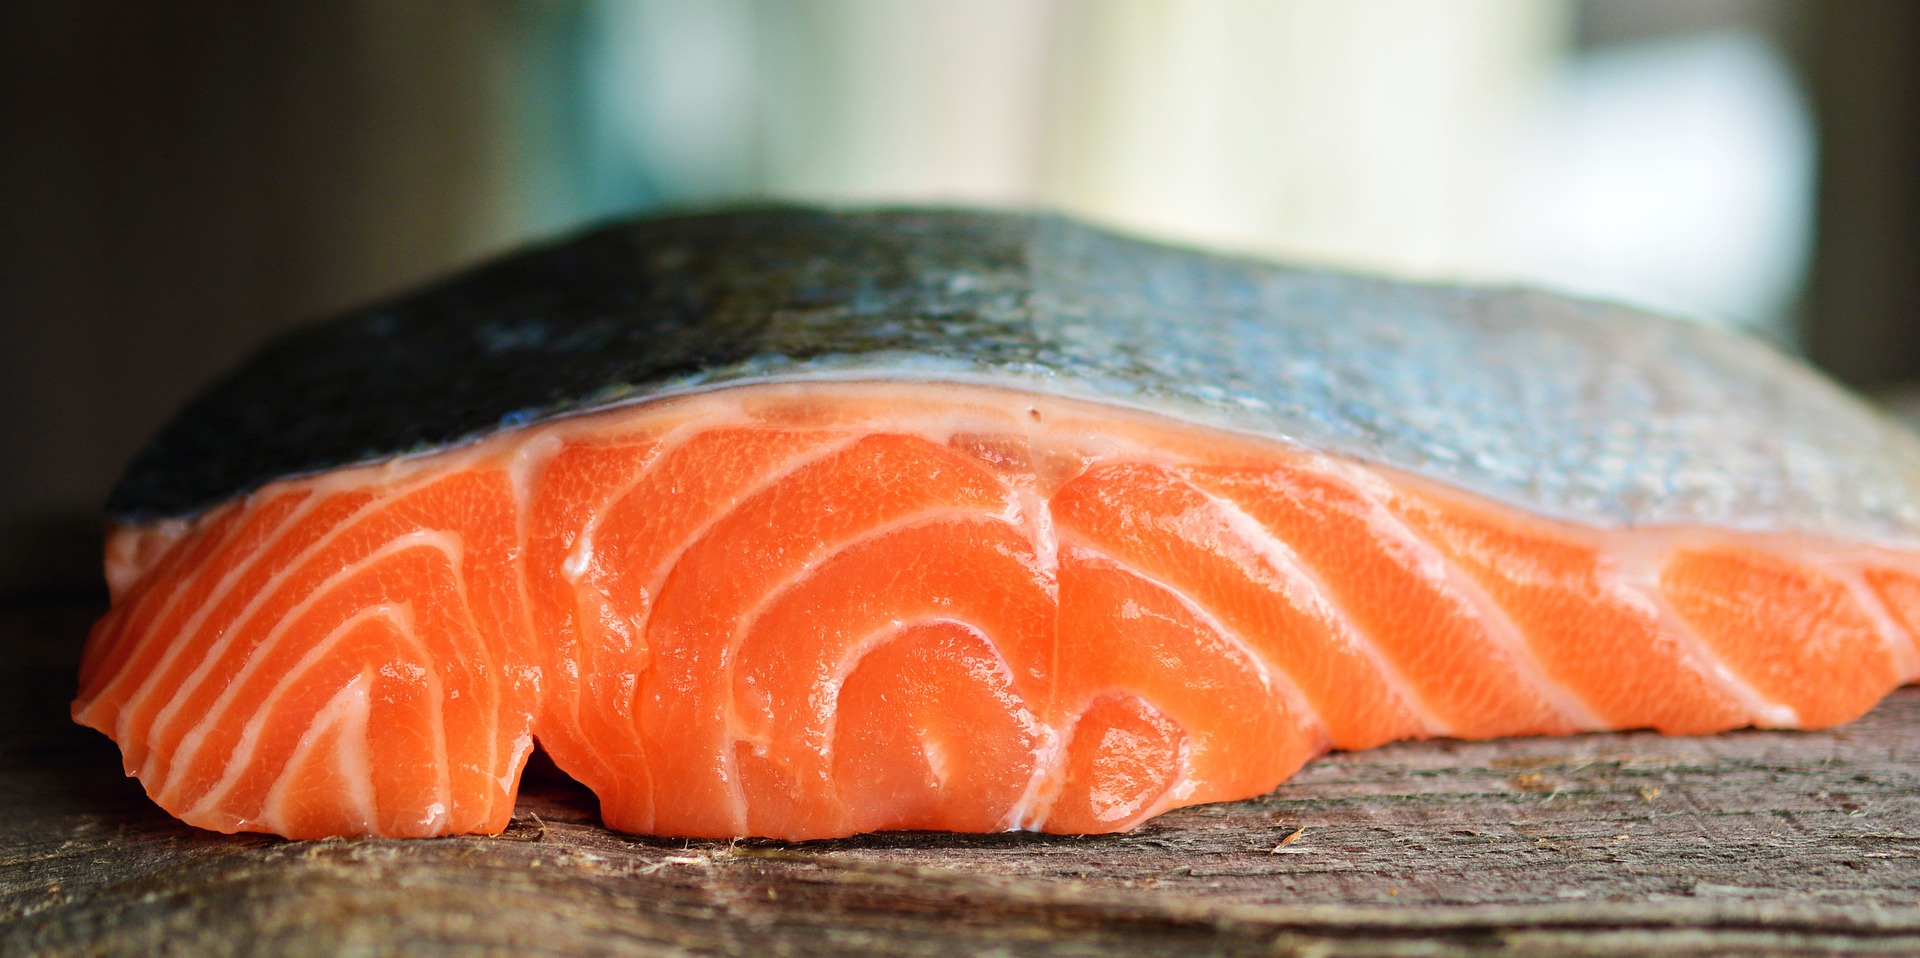 Raw salmon filet